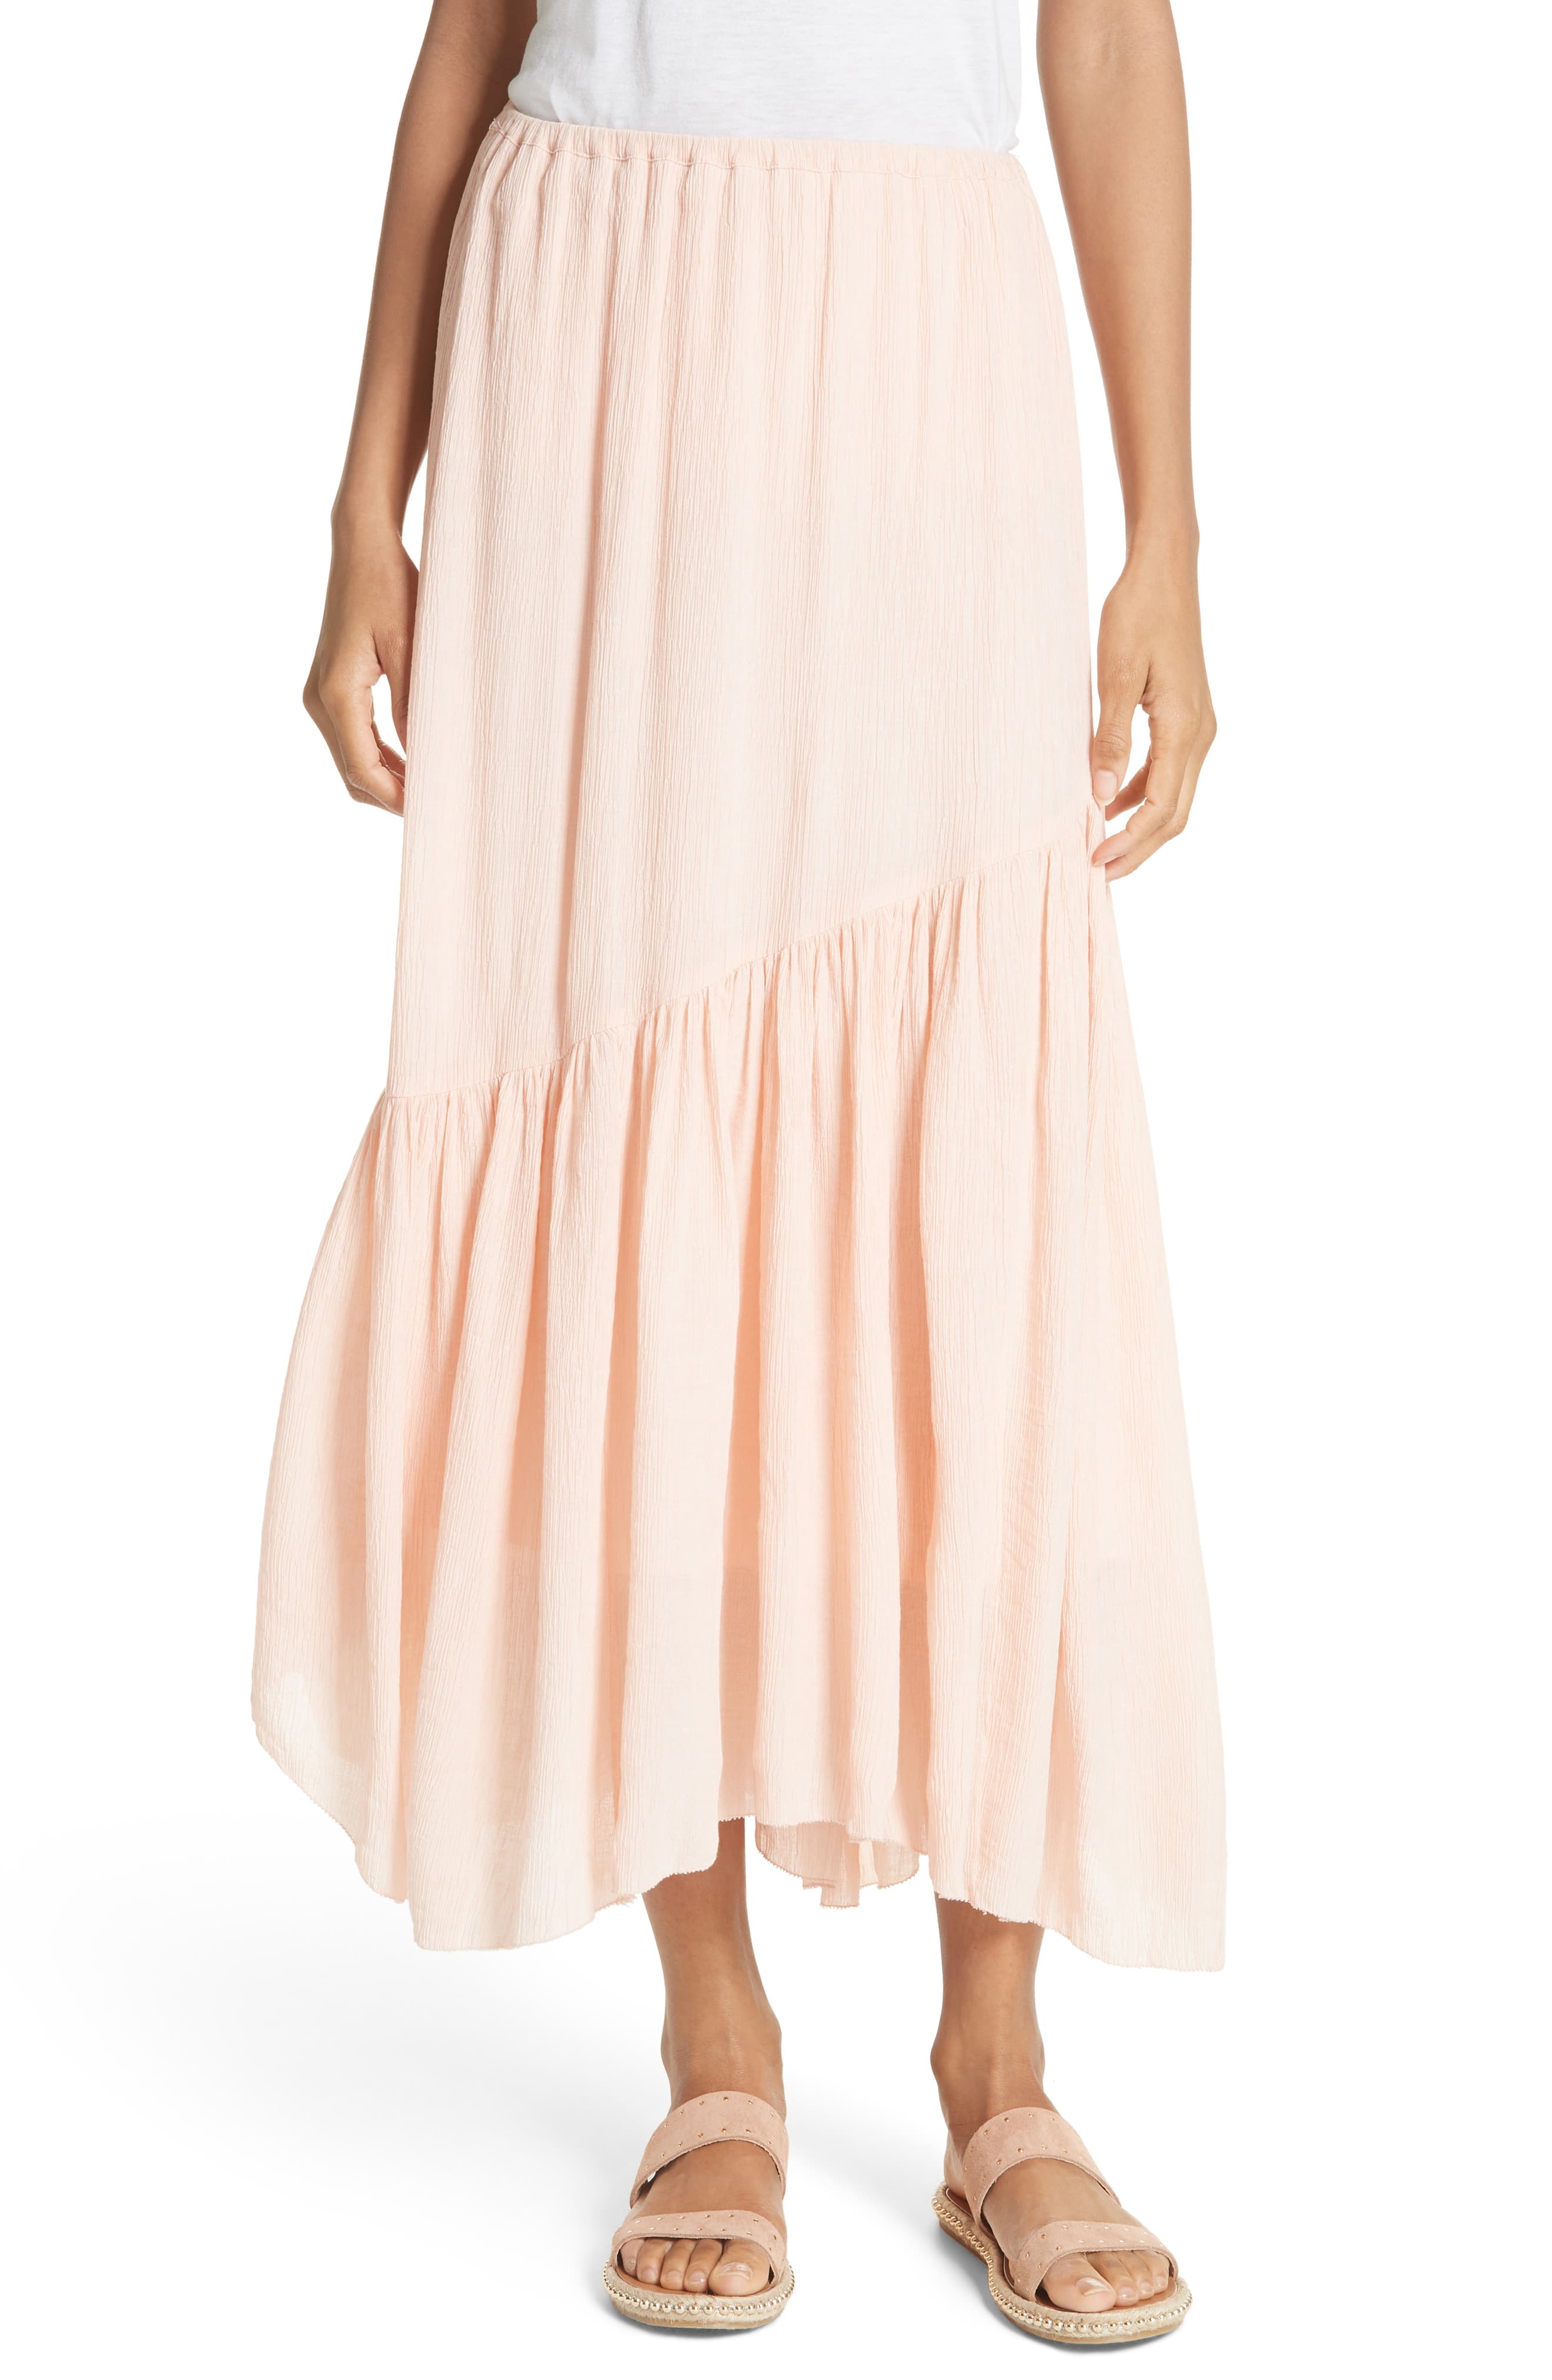 Joie | Hiwalani B Textured Maxi Skirt | Pink | L | eBay